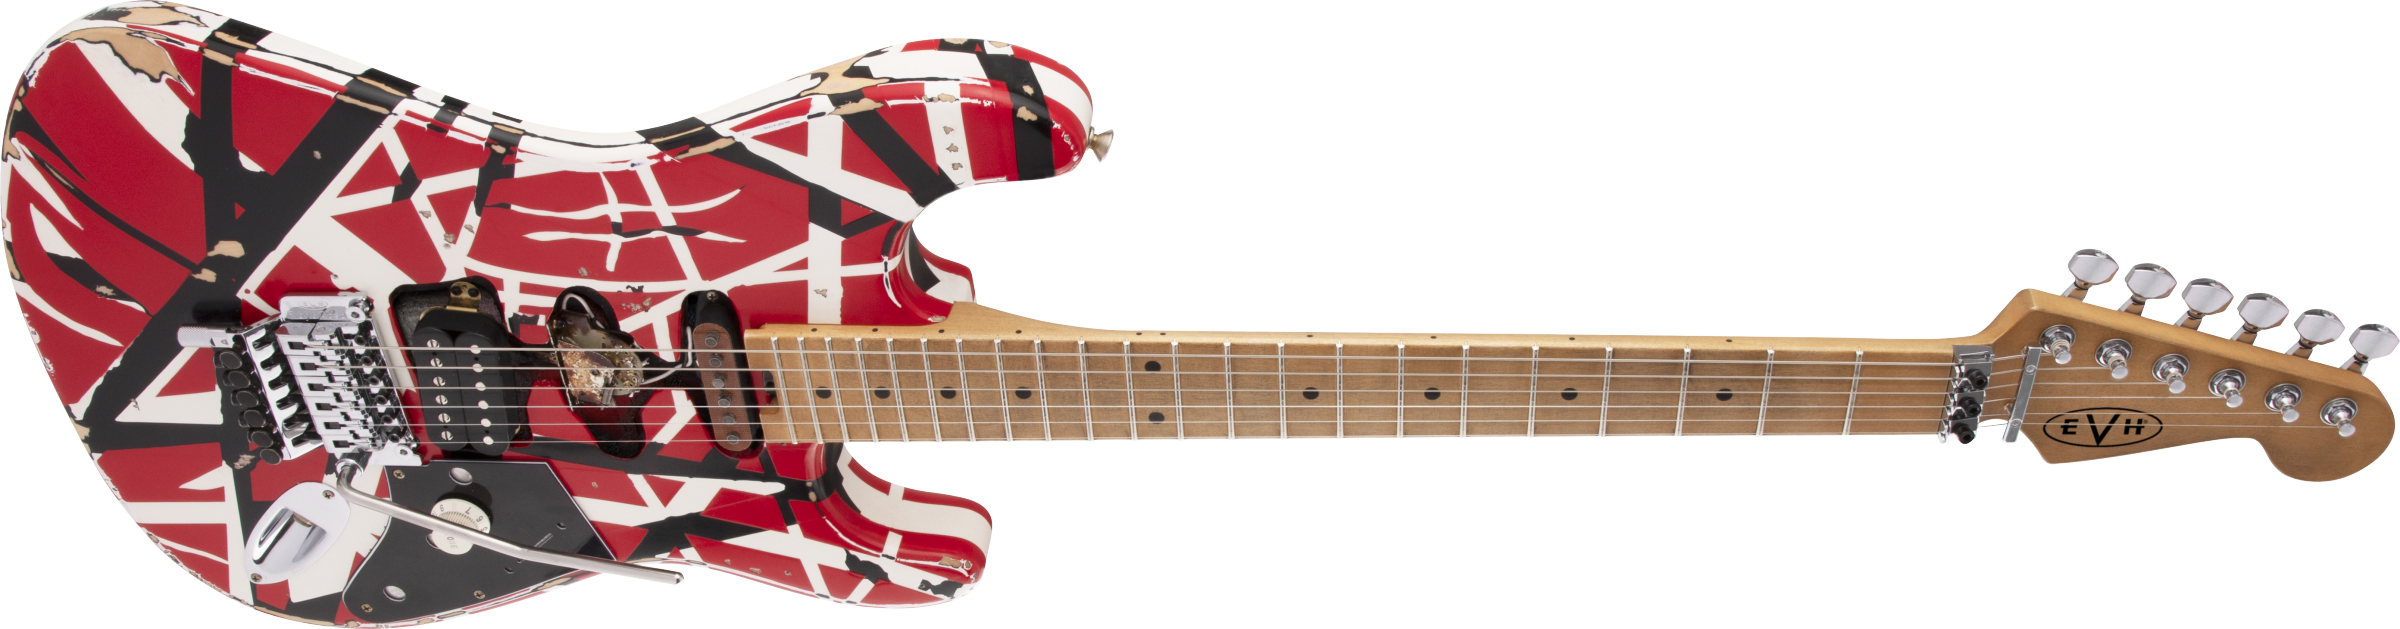 Evh Eddie Van Halen Frankenstein Frankie Striped Series Mex H Fr Mn - Red With Black & White Stripes - Elektrische gitaar in Str-vorm - Variation 3